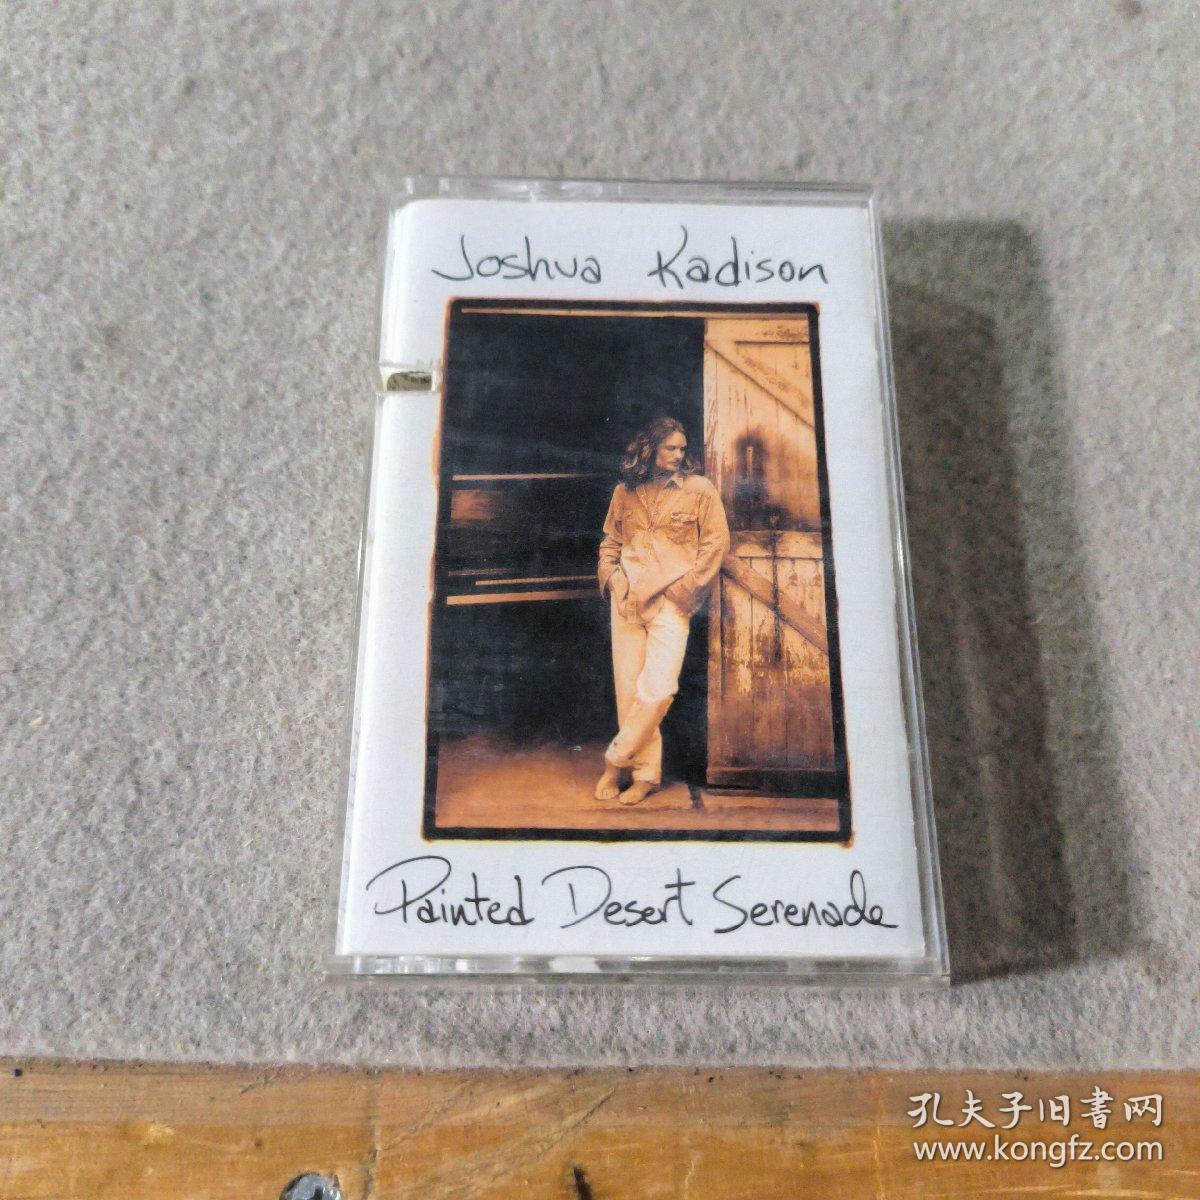 磁带 Joshua Kadison planted desert serenade